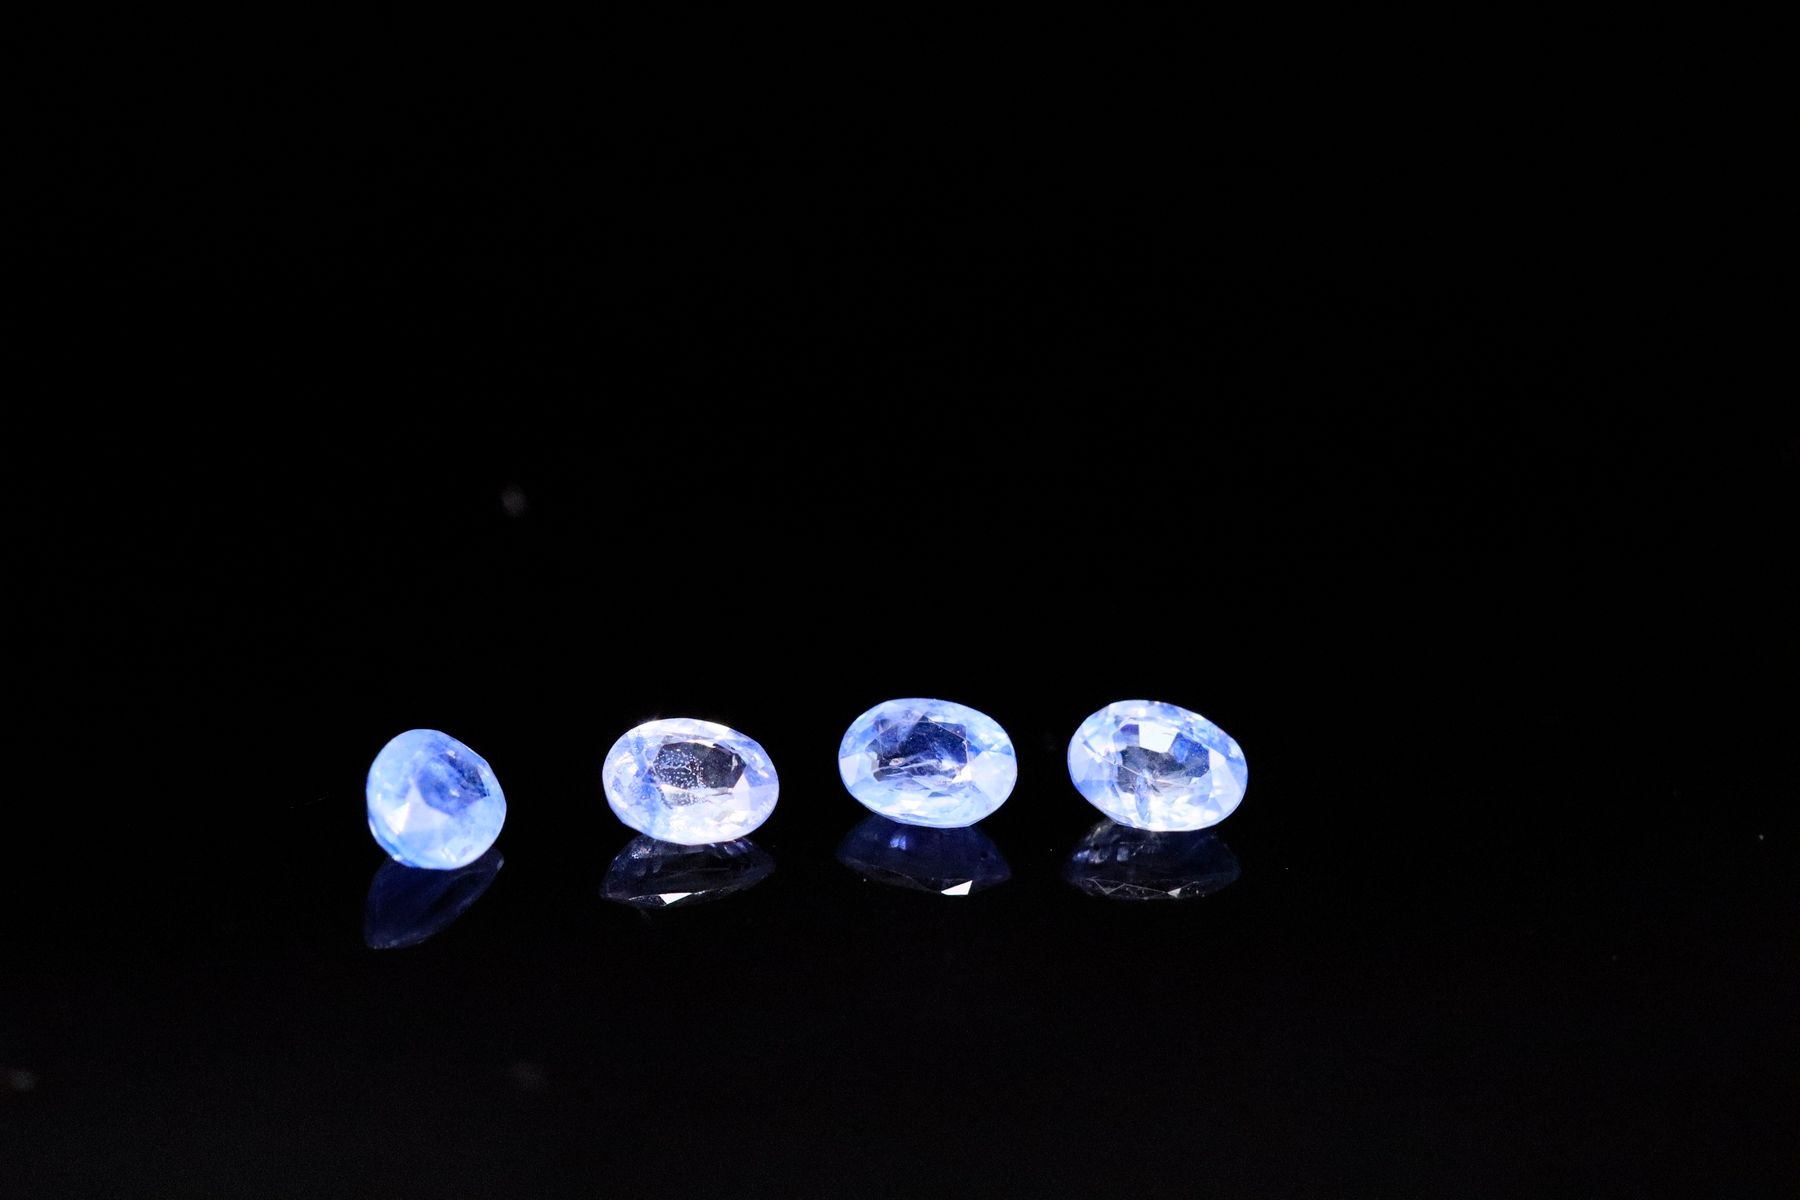 Null 纸质四颗椭圆形蓝宝石混合物。
可能产于锡兰。
重量：1.35 克拉

平均尺寸：5 毫米 x 3.8 毫米